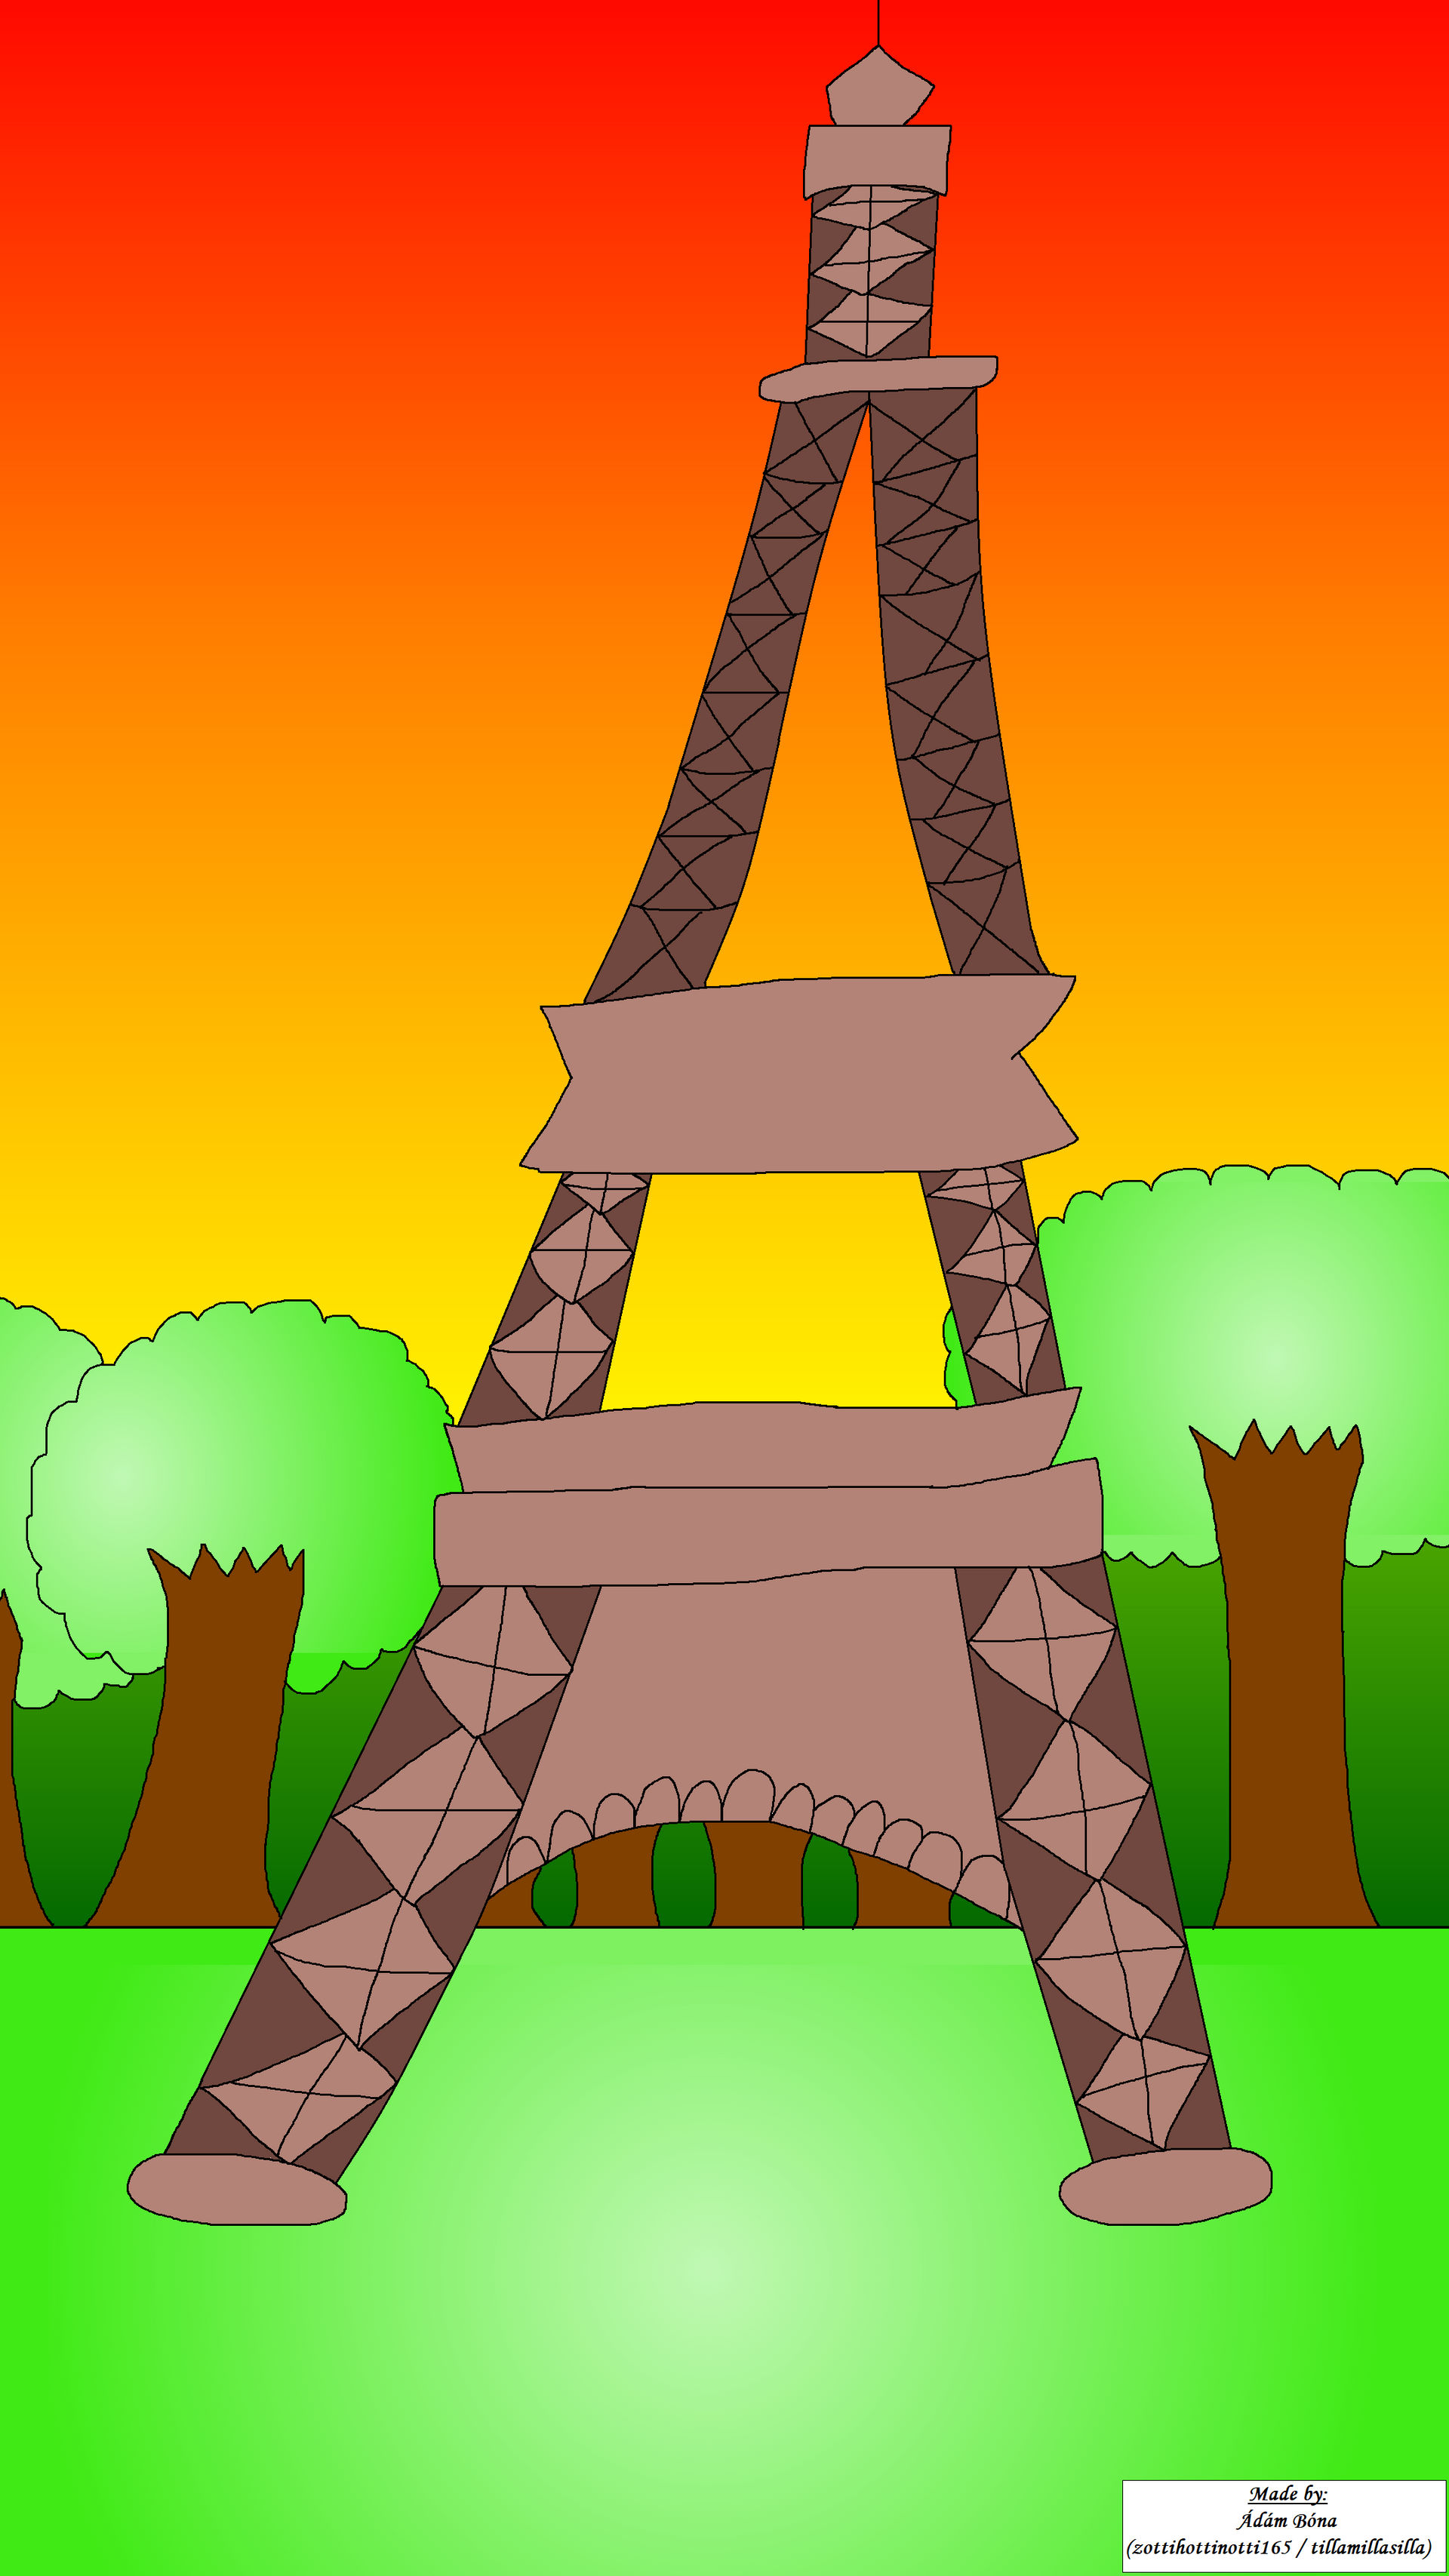 How to make an Eiffel Tower Centerpiece #paris